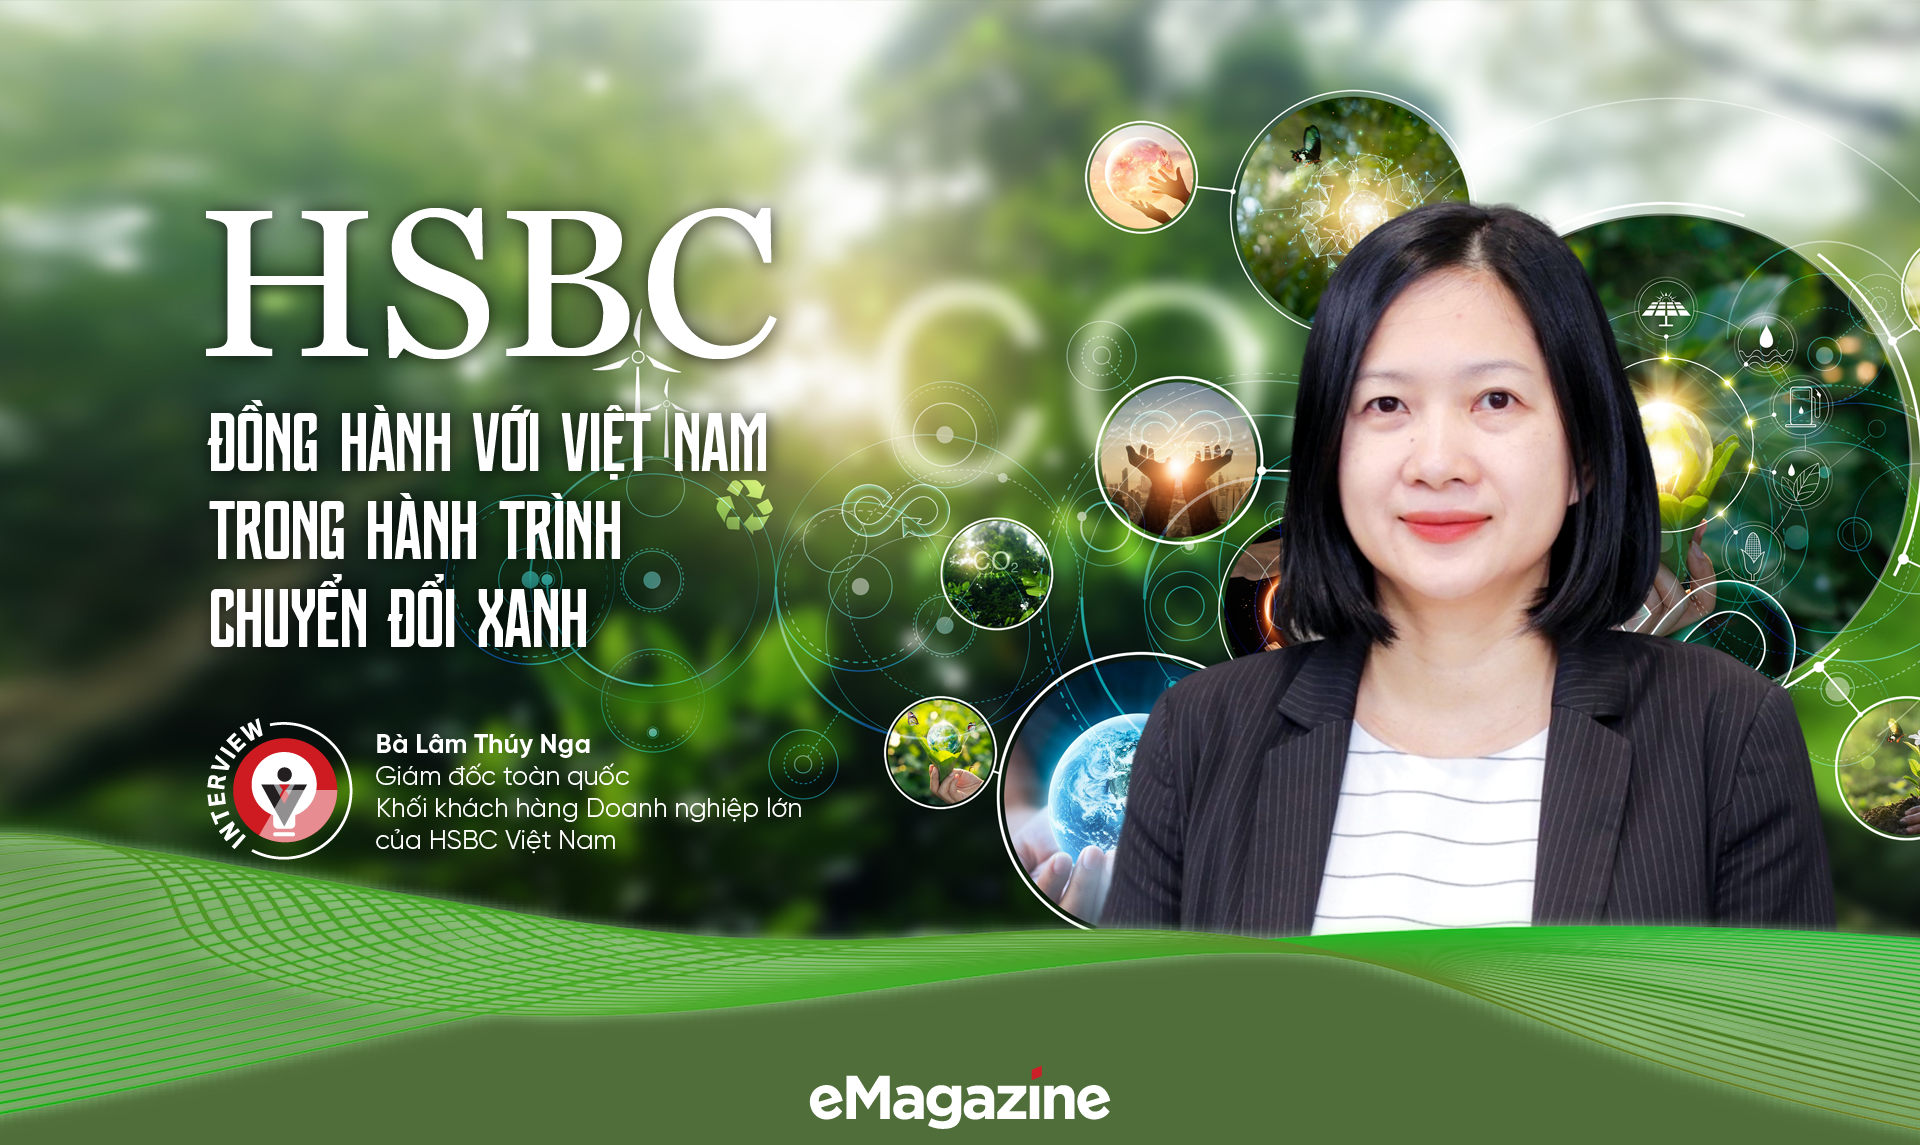 HSBC đồng hành với Việt Nam trong hành trình chuyển đổi xanh - Ảnh 1